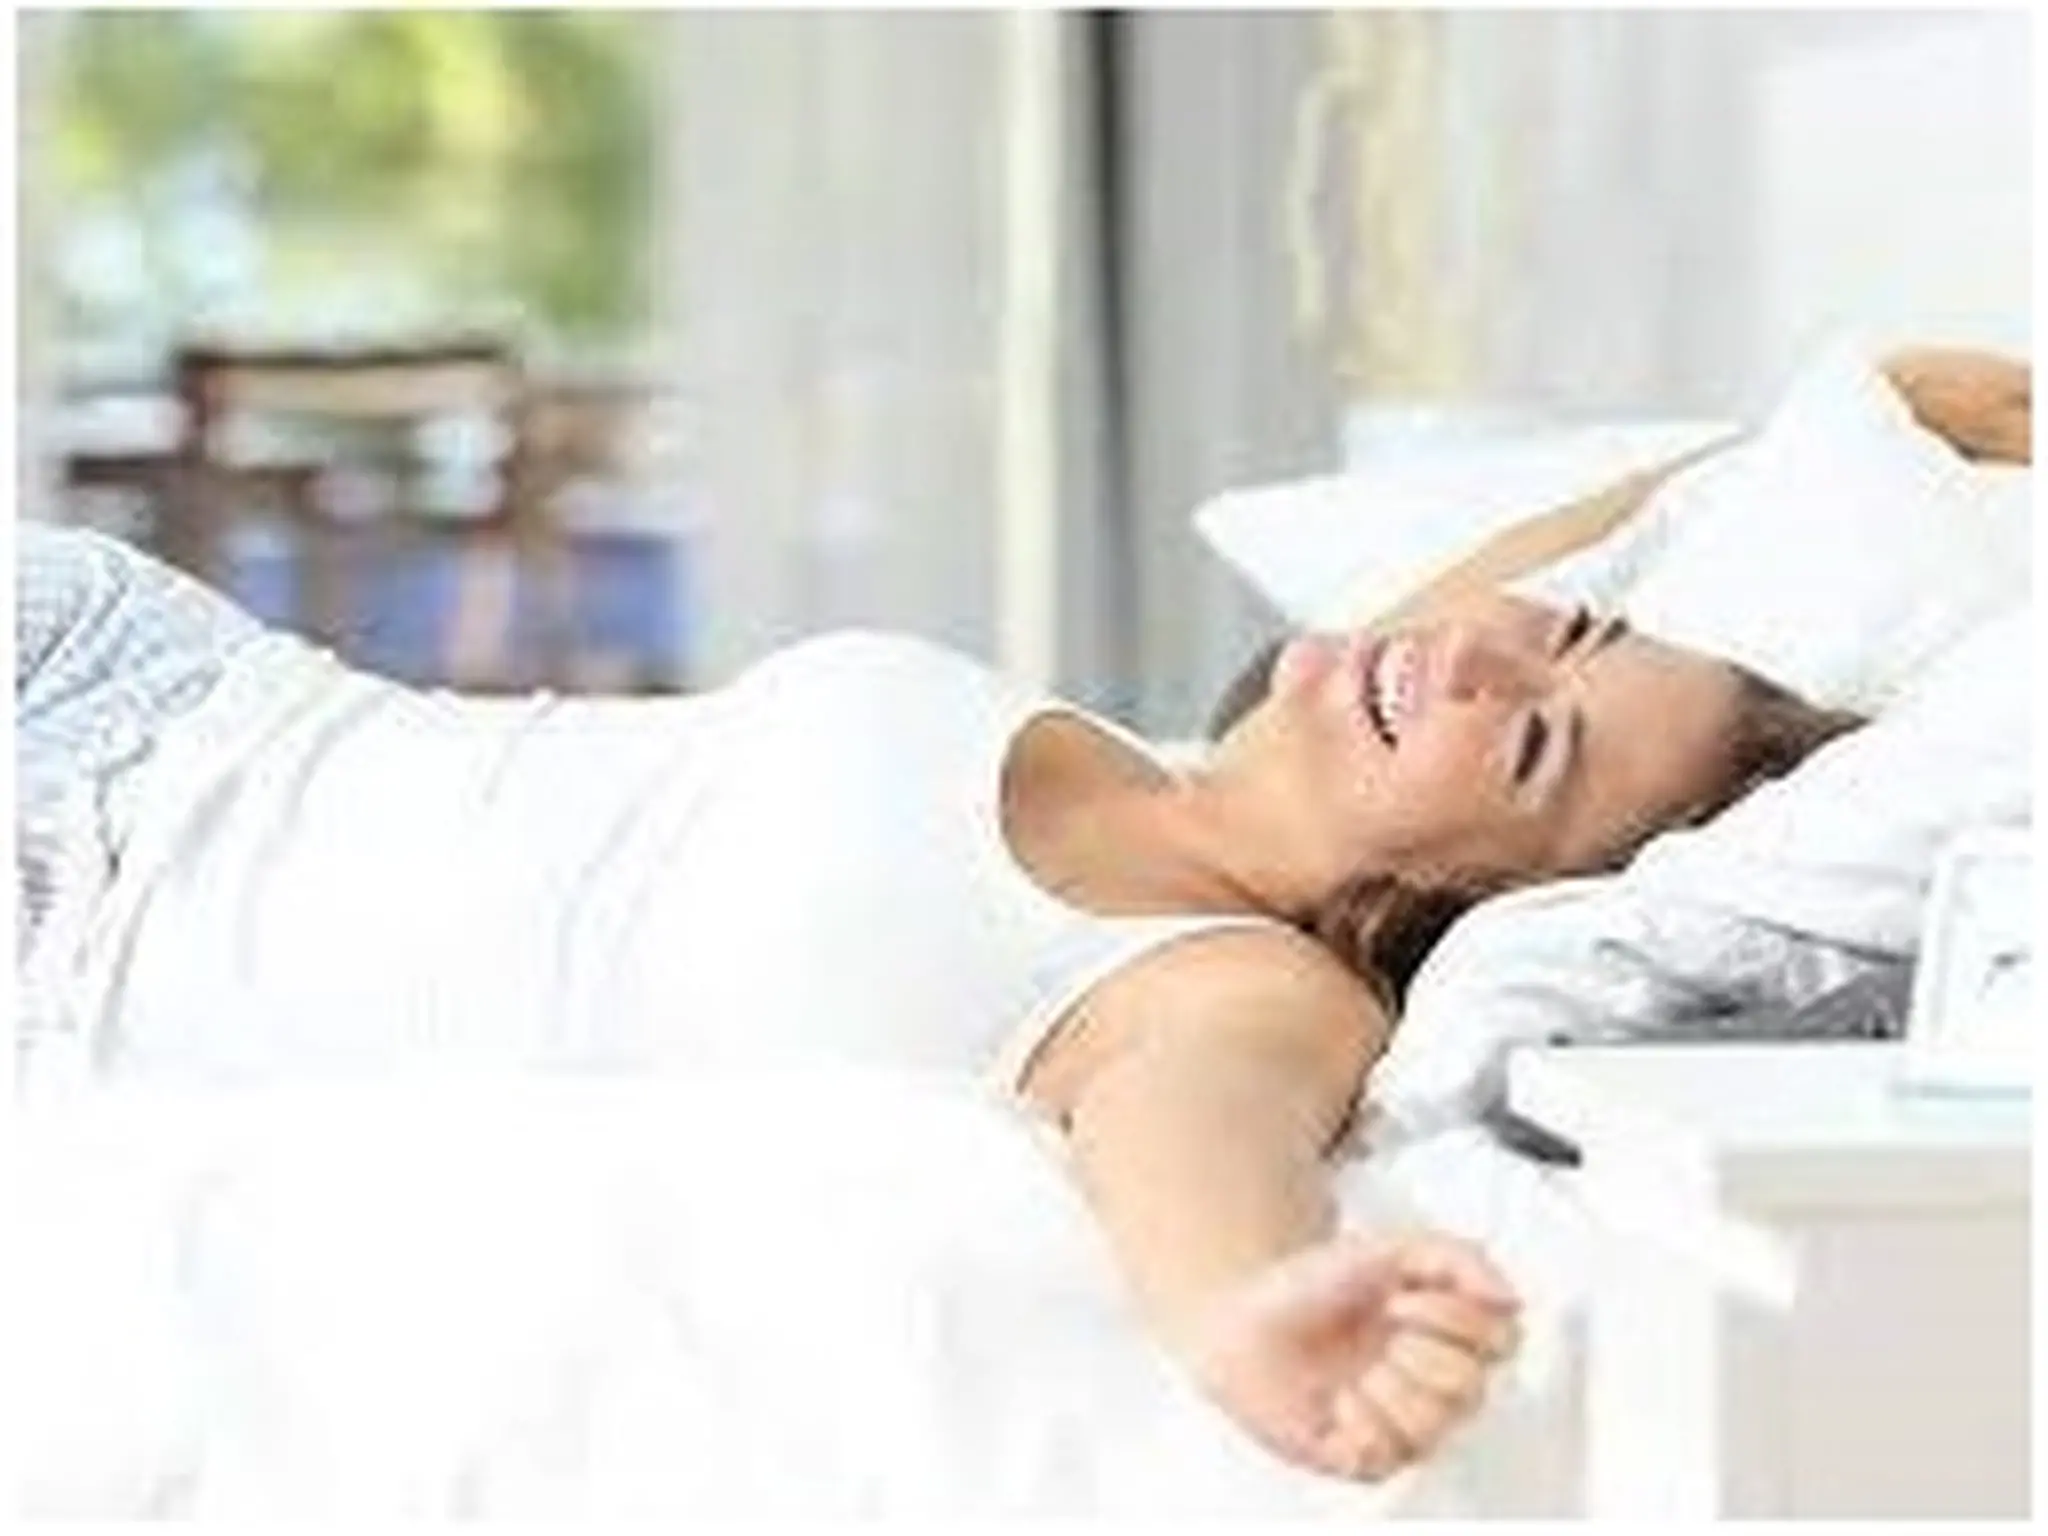 أختراع نوع ملايات سرير جديدة لتبريد الجسم في فصل الصيف أثناء النوم